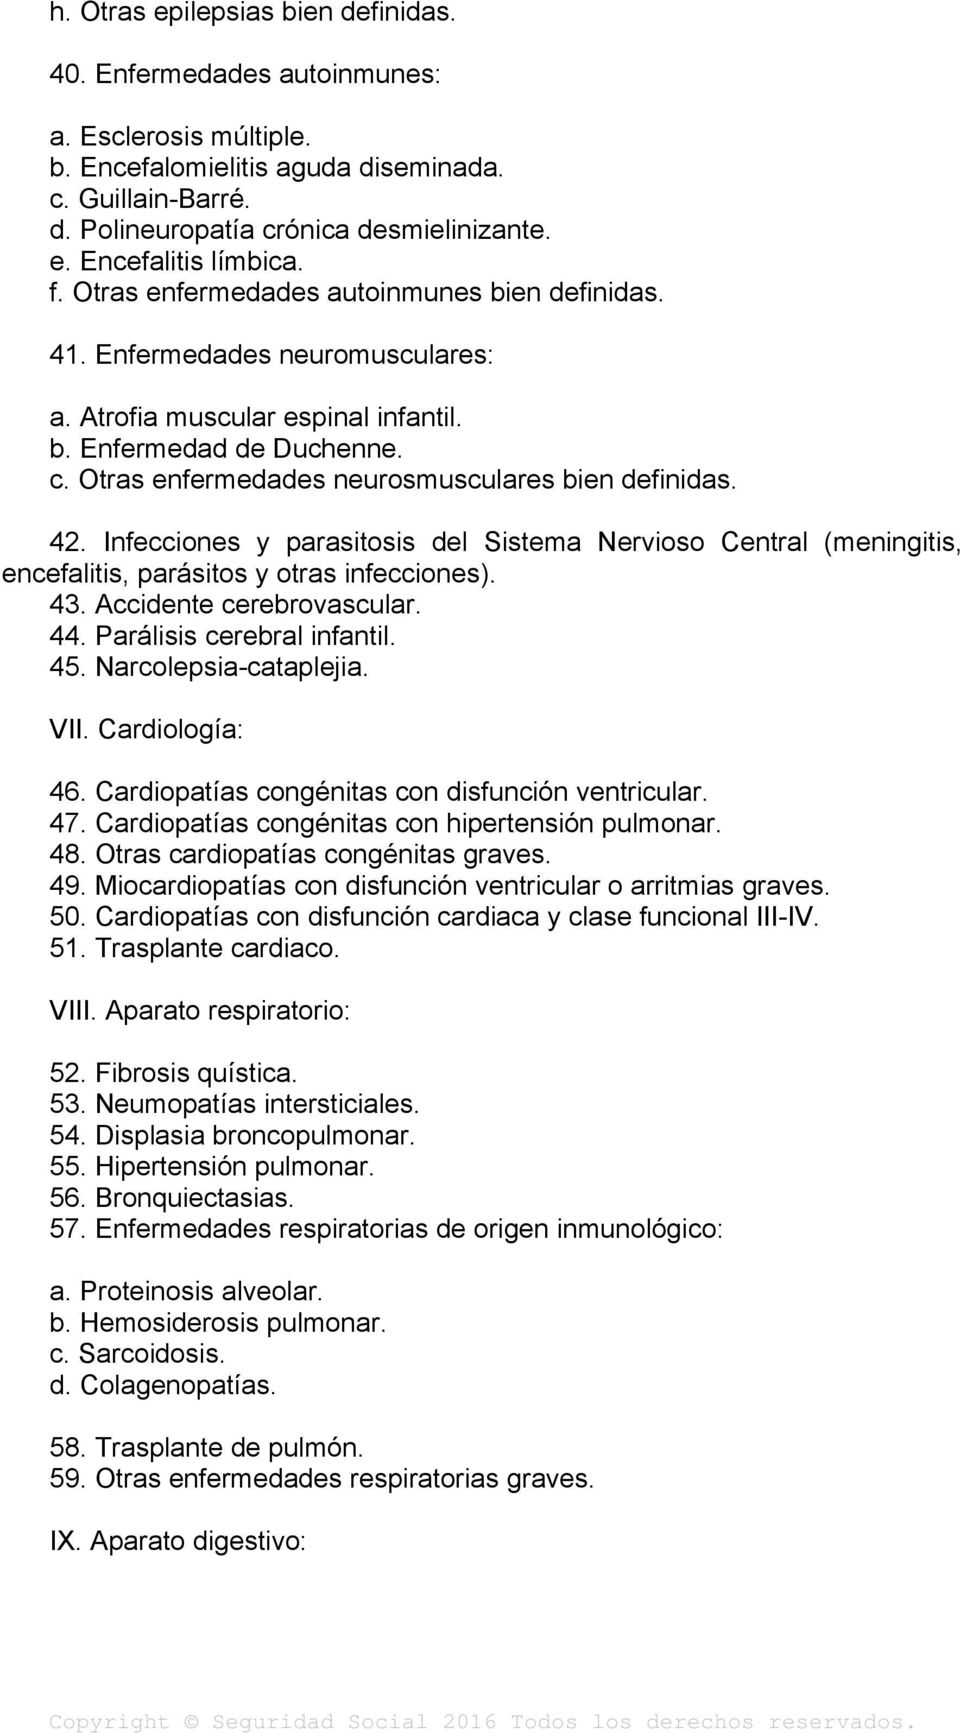 Otras enfermedades neurosmusculares bien definidas. 42. Infecciones y parasitosis del Sistema Nervioso Central (meningitis, encefalitis, parásitos y otras infecciones). 43. Accidente cerebrovascular.